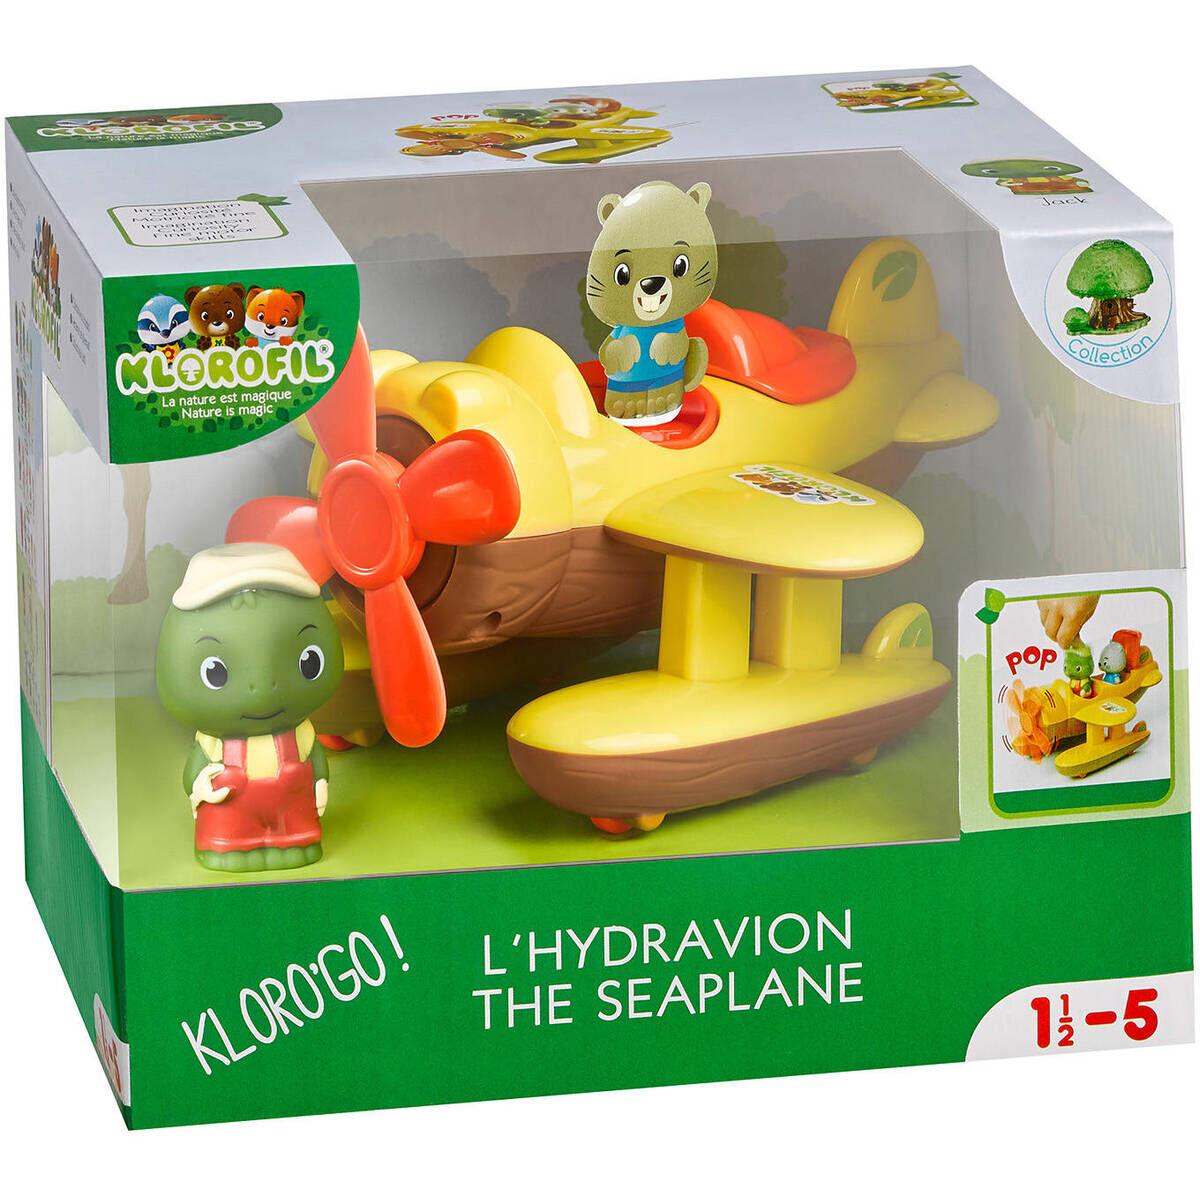 Hydroplan - zabawka wodna dla dzieci od 18 miesiąca życia - Klorofil